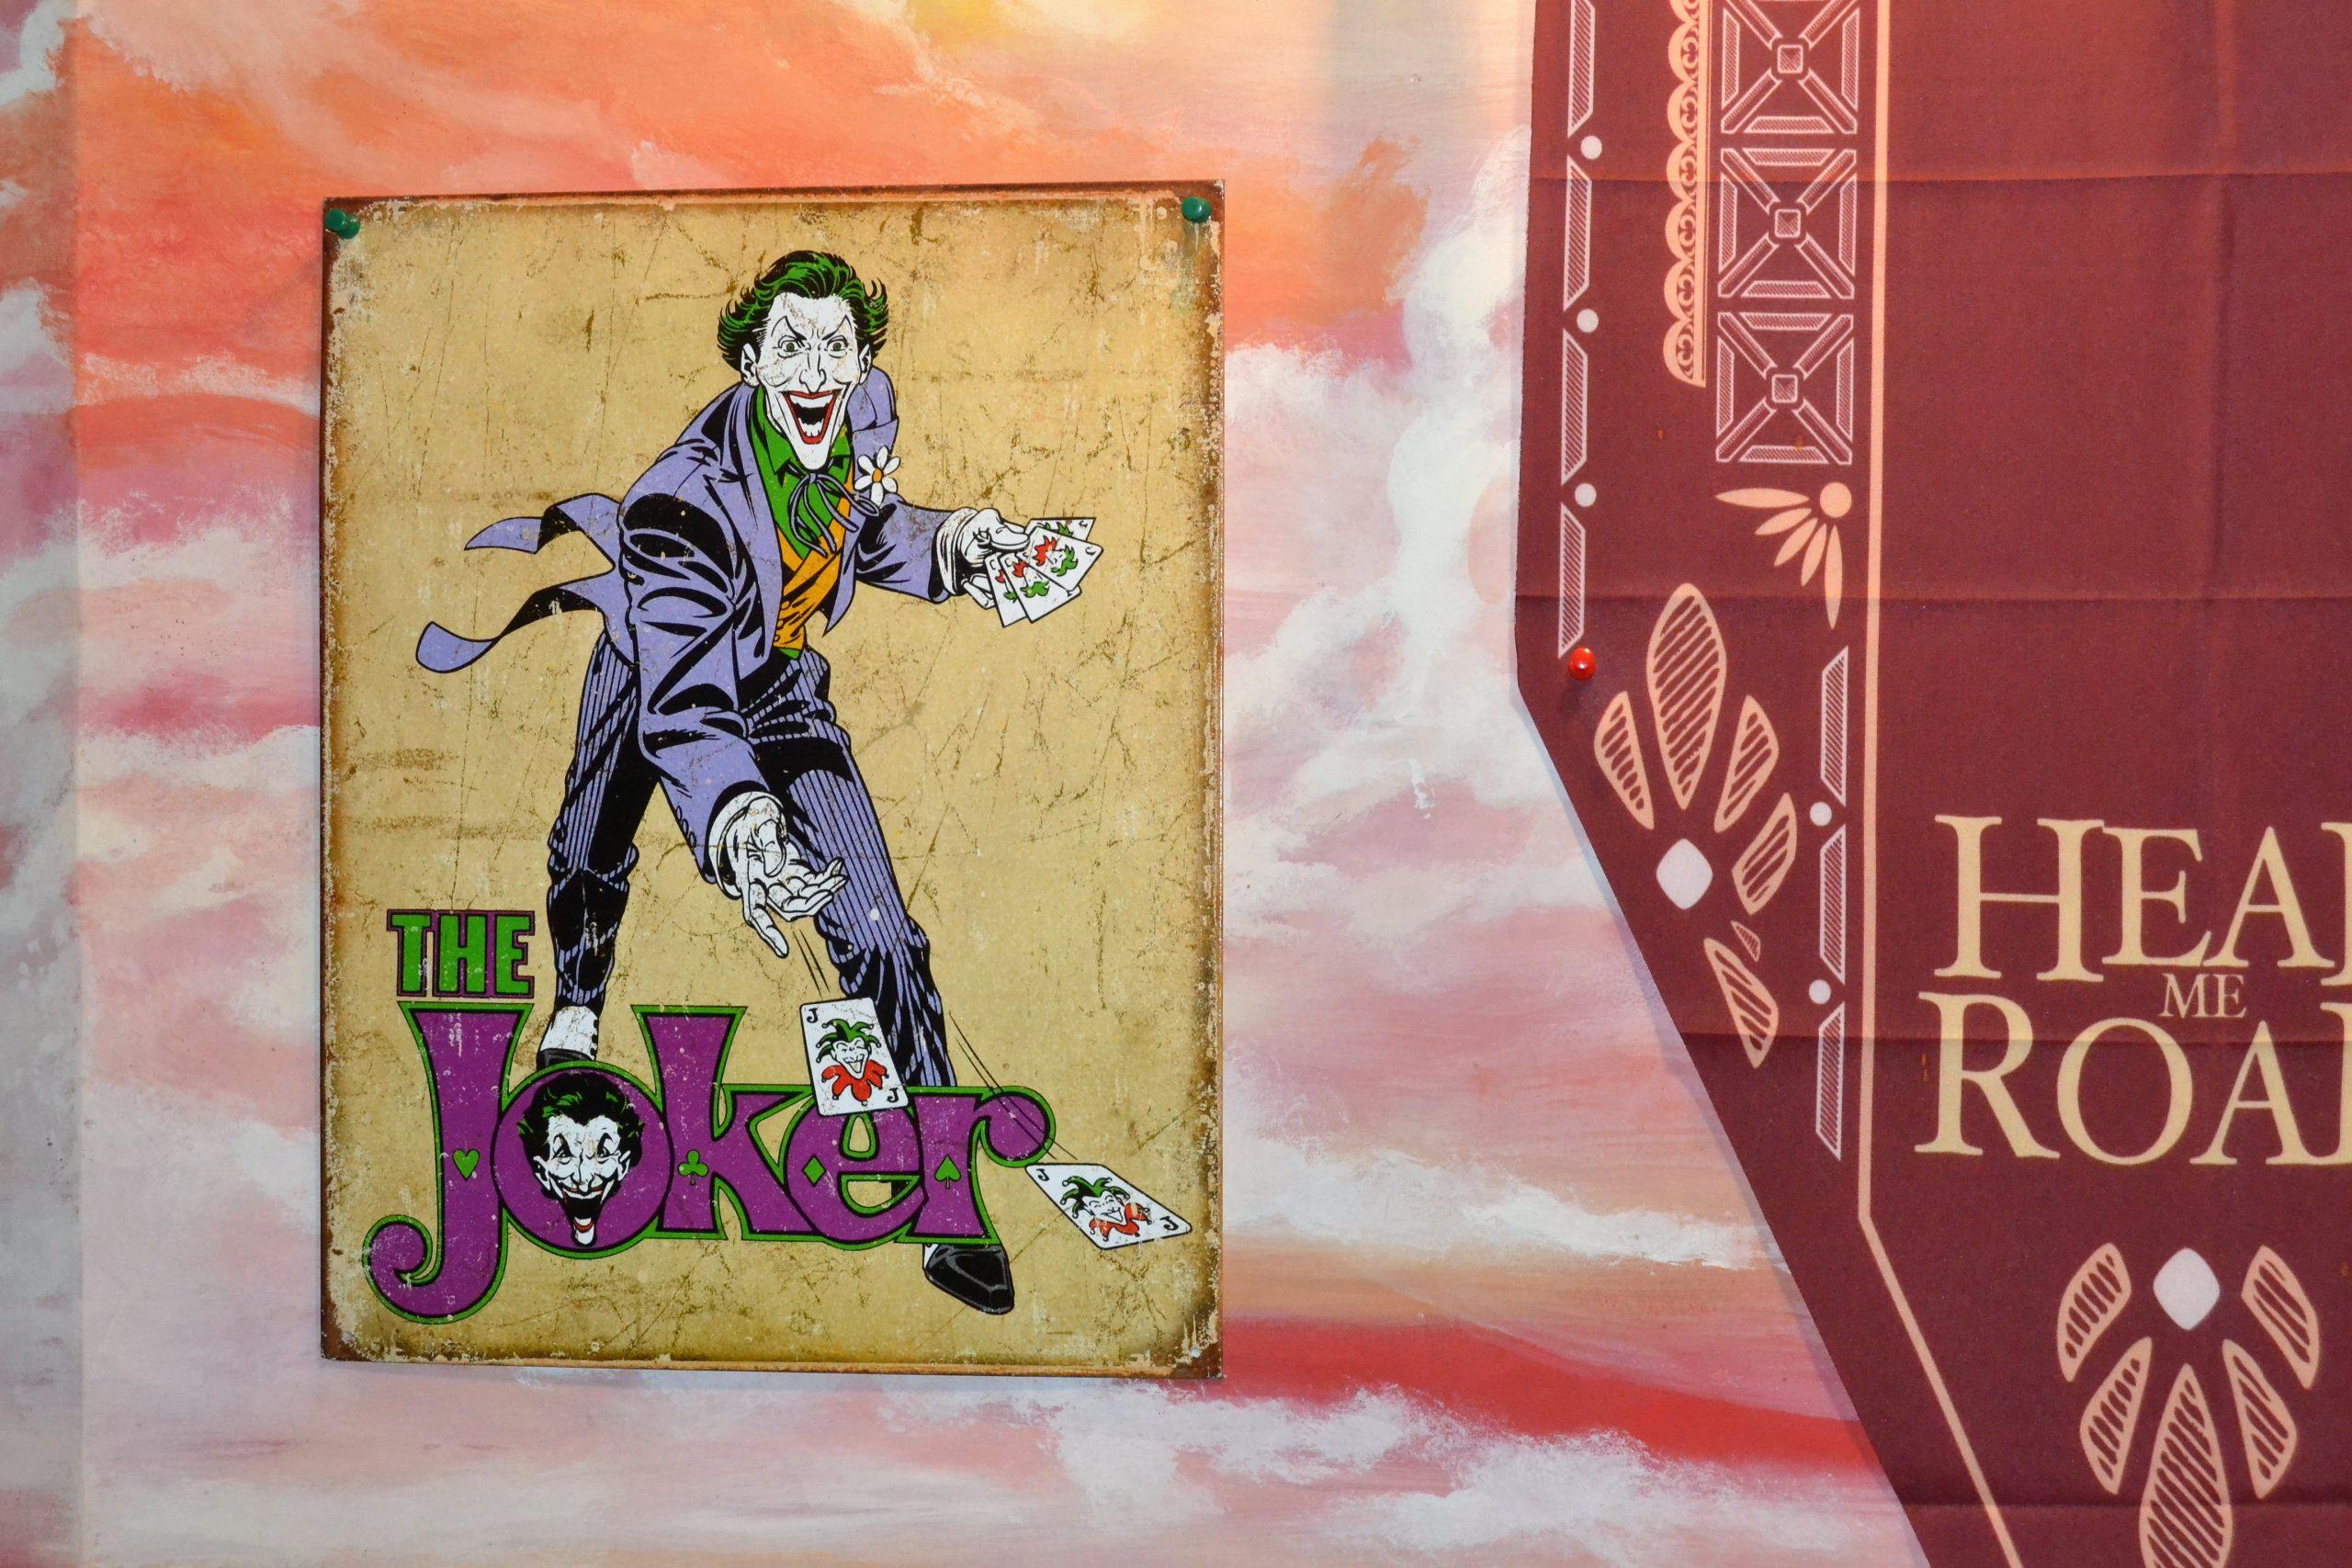 El Joker está muy presente en la decoración del local.